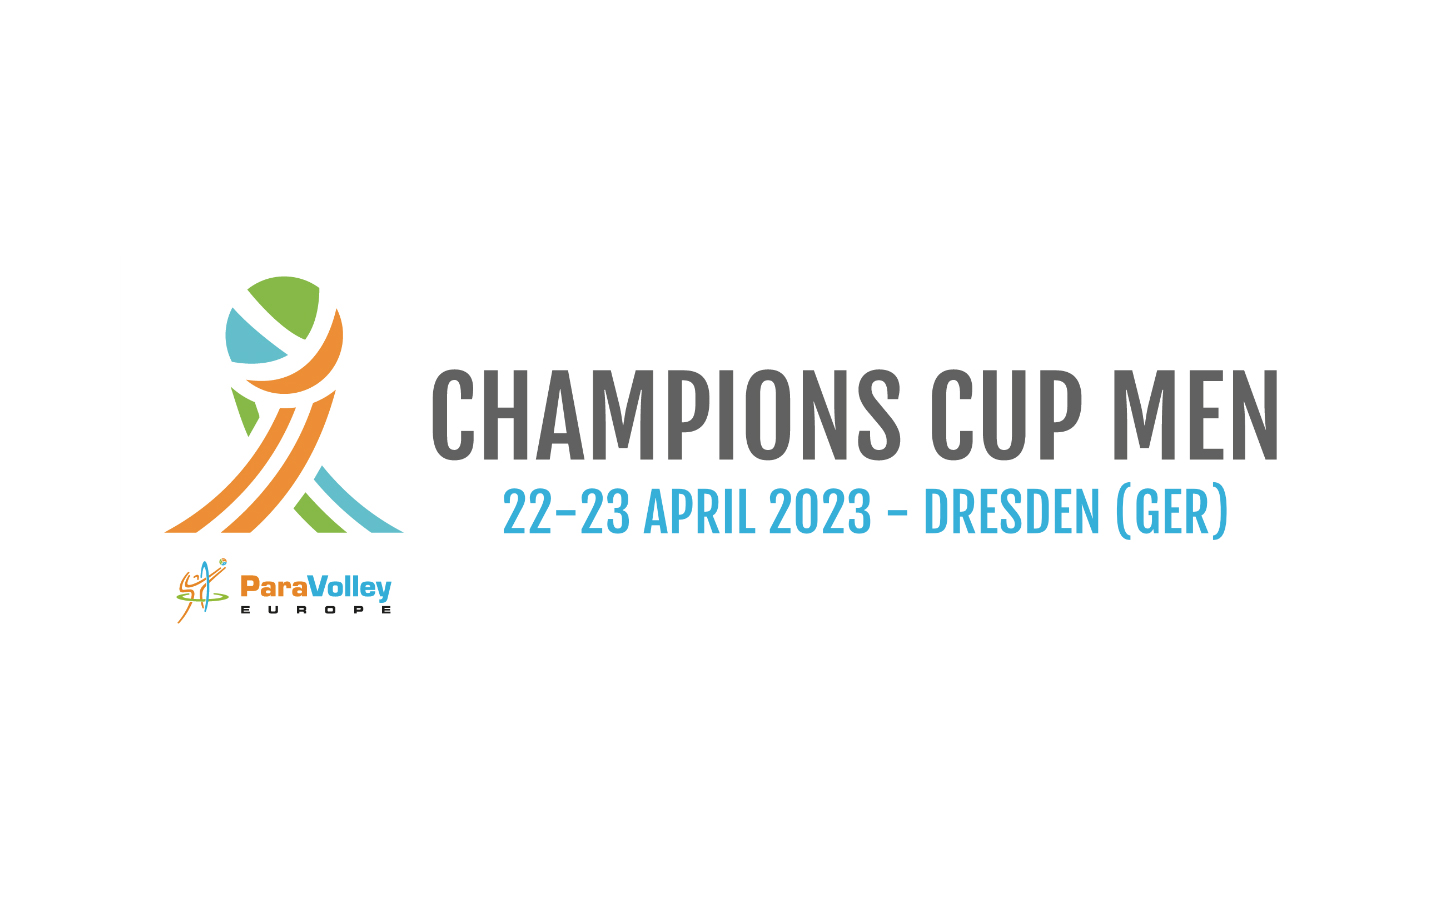 Şampiyonlar Kupası, ParaVolley Avrupa’nın 2023 rekabet sezonunu açıyor > Dünya ParaVolleyWorld ParaVolley